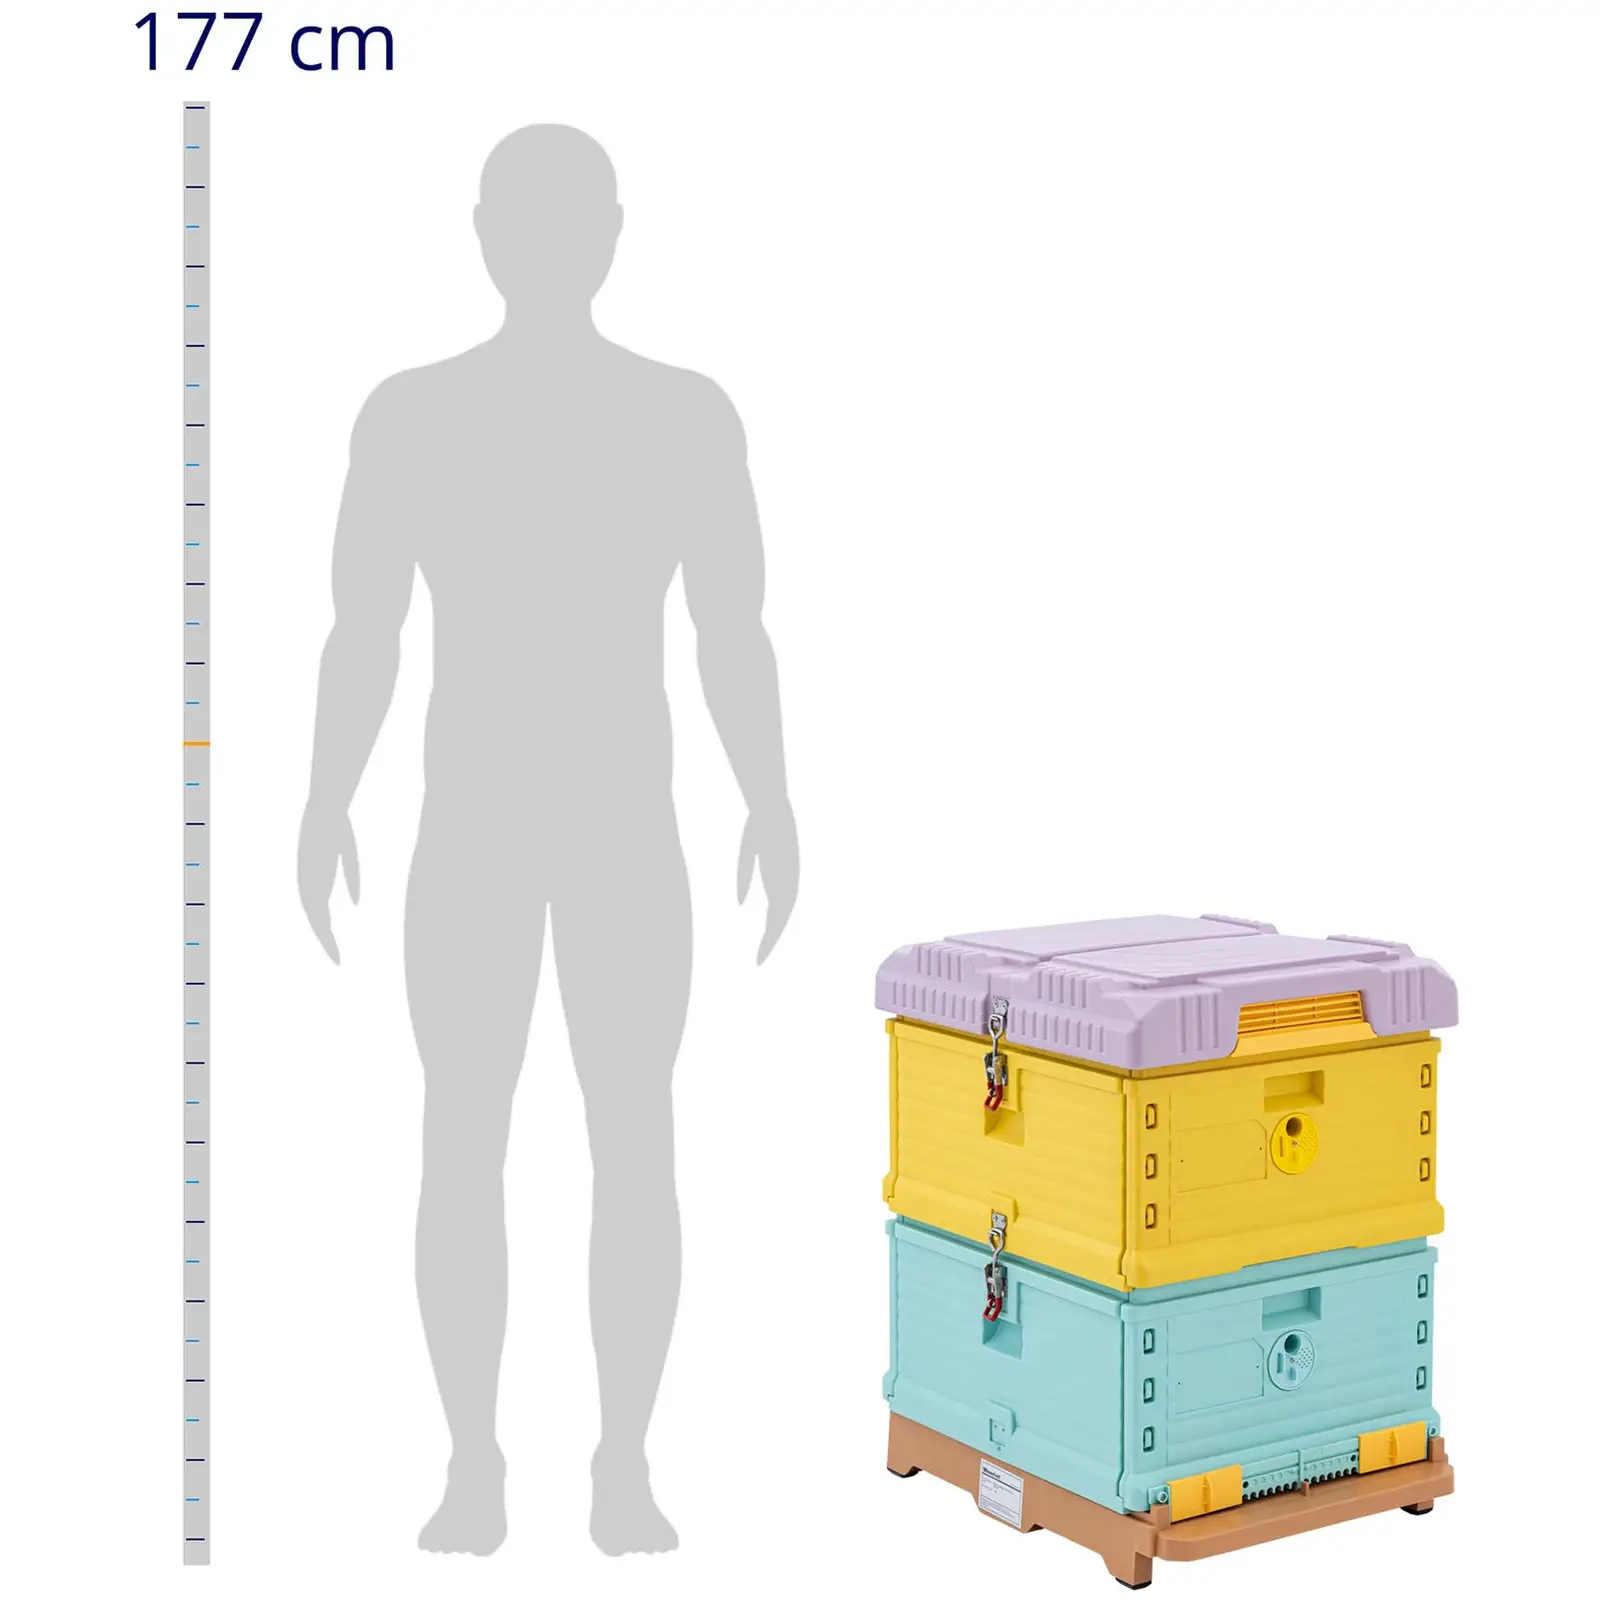 Boite de ruche - Plastique (polypropylène) - 54 x 44 cm - avec isolation thermique